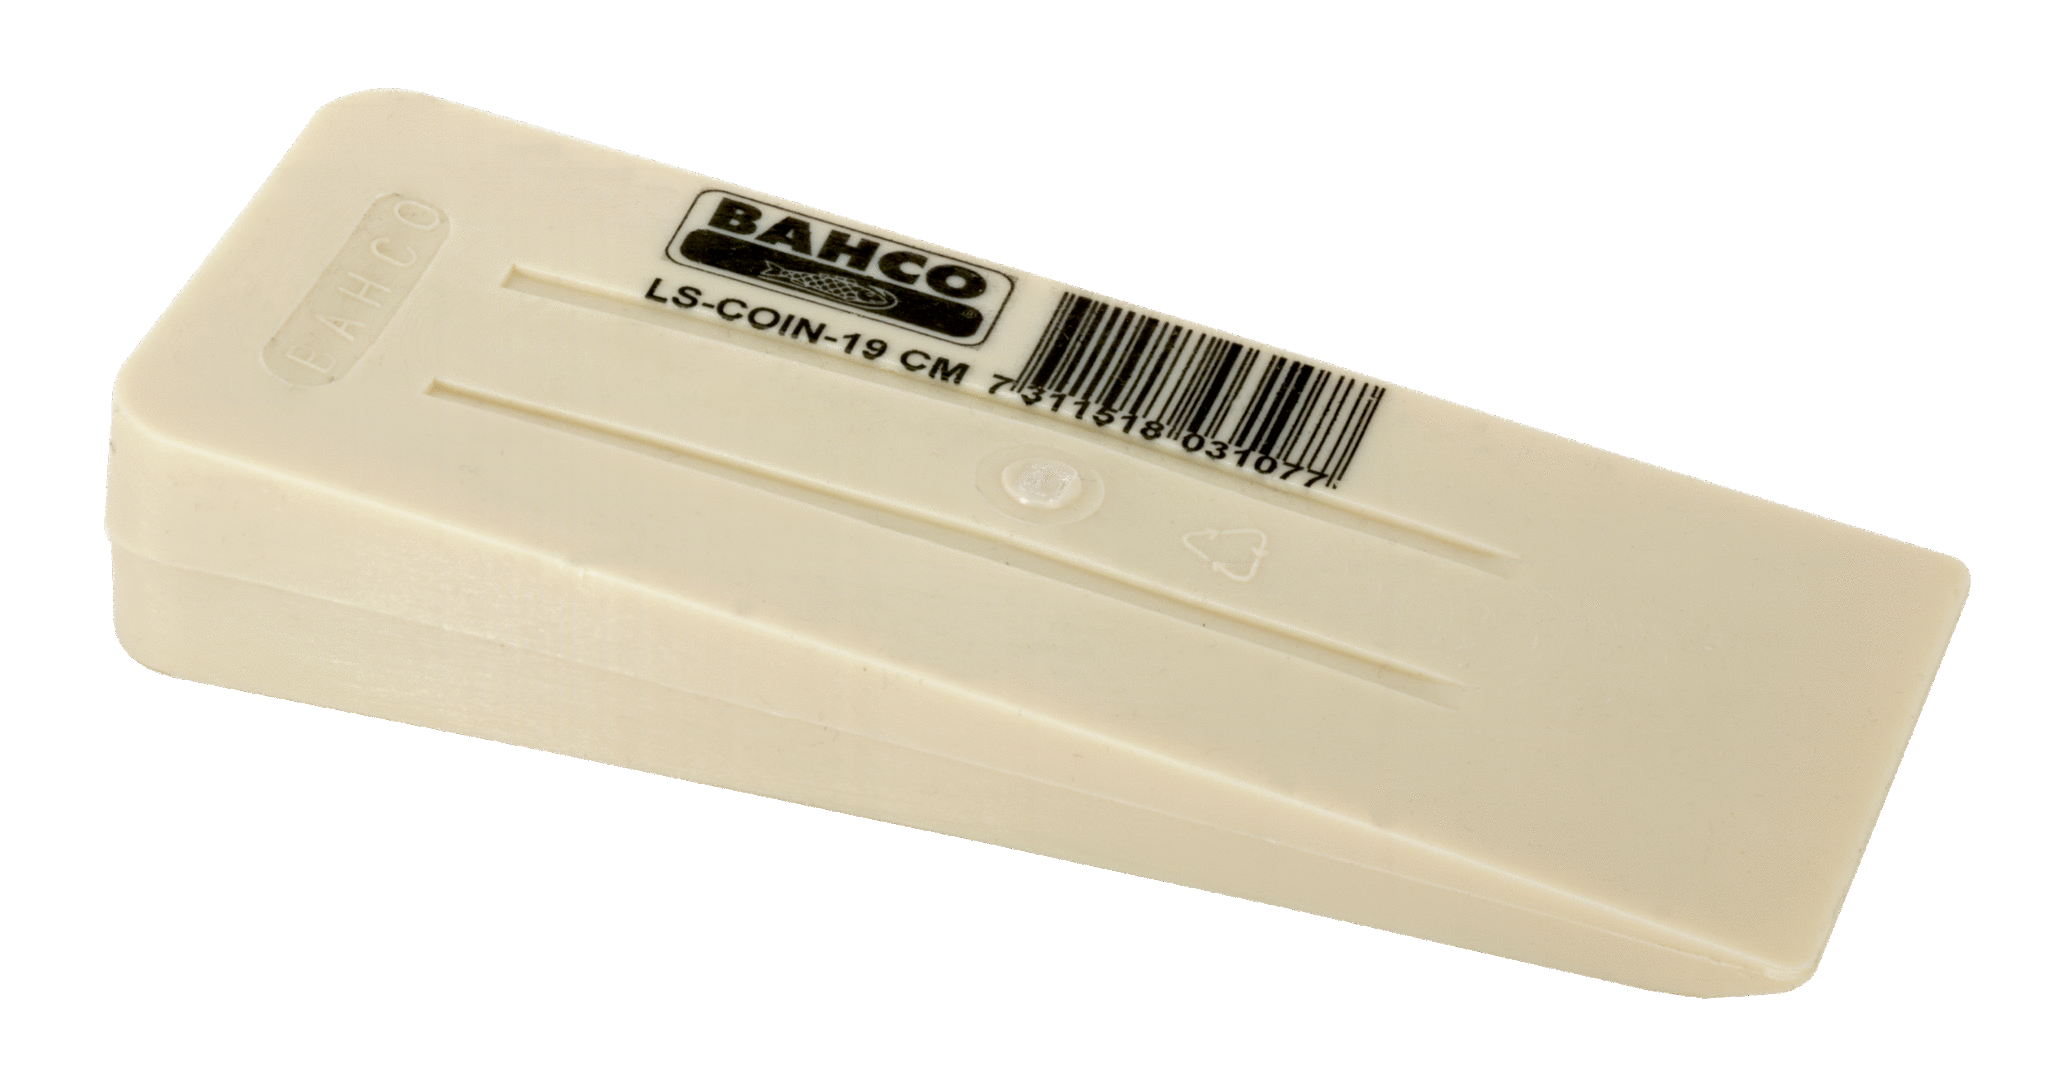 Клин для валочного топора синтетический BAHCO LS-COIN 26 CM